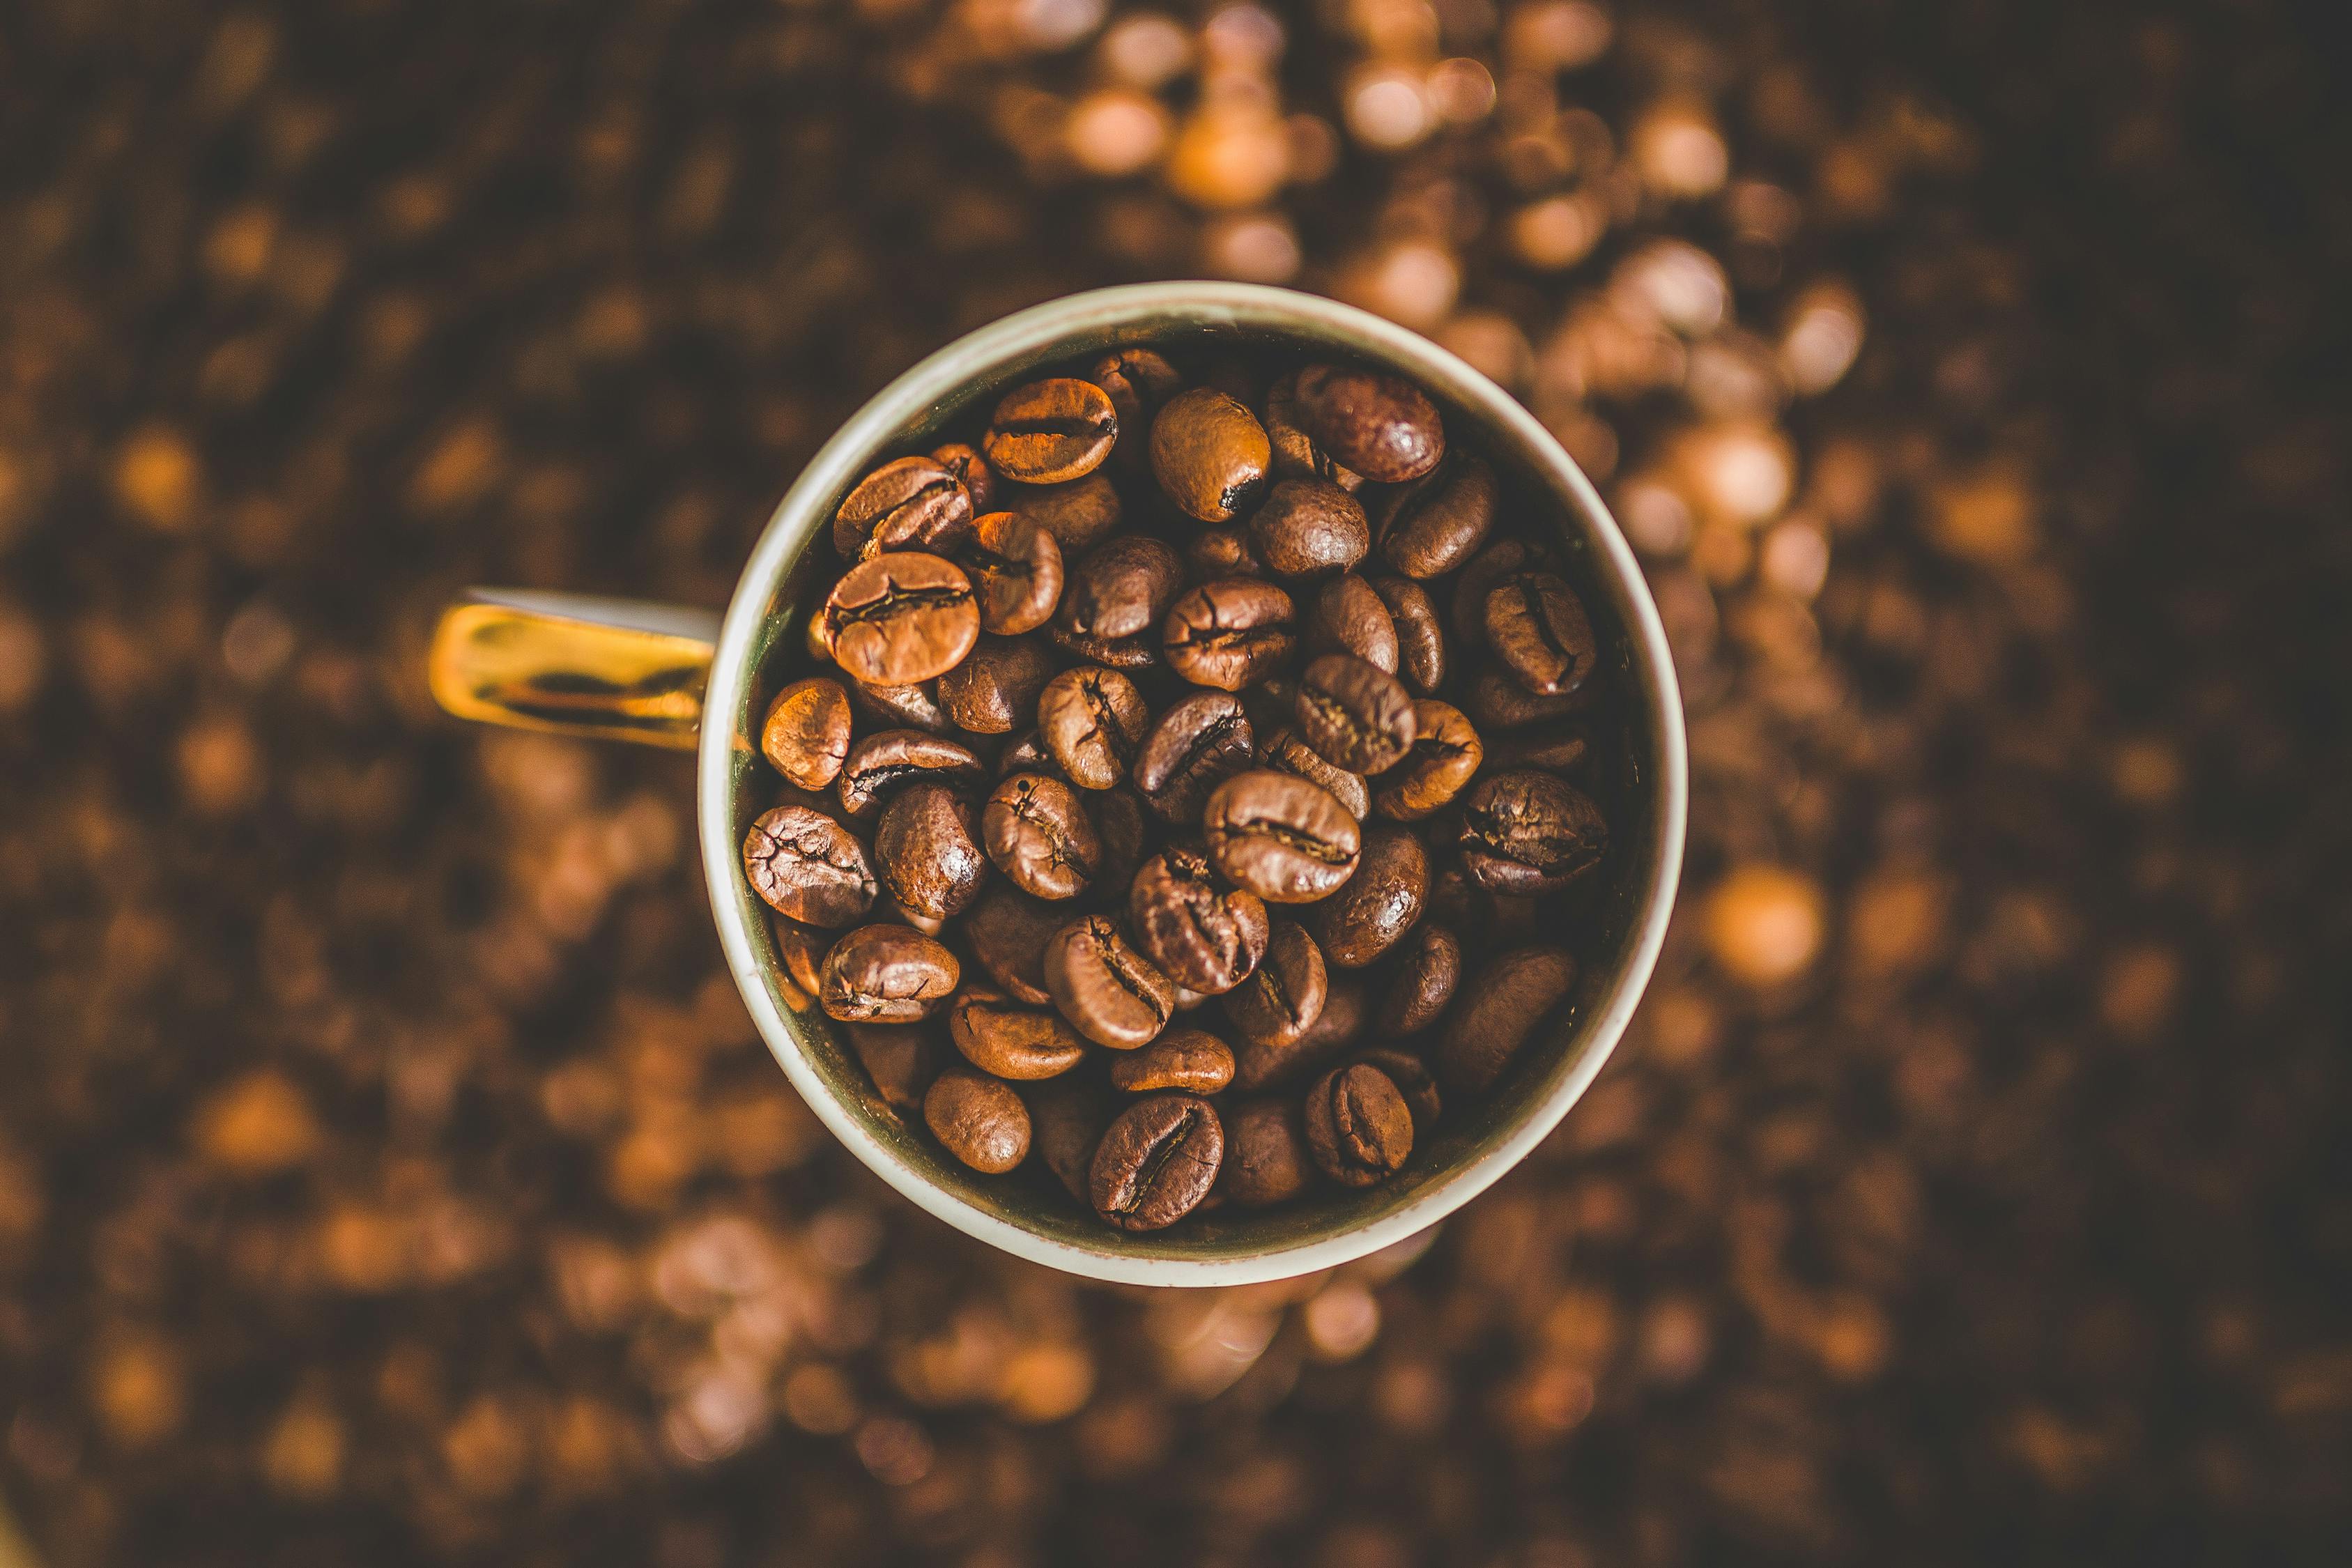 咖啡, 咖啡因, 咖啡豆 的 免費圖庫相片